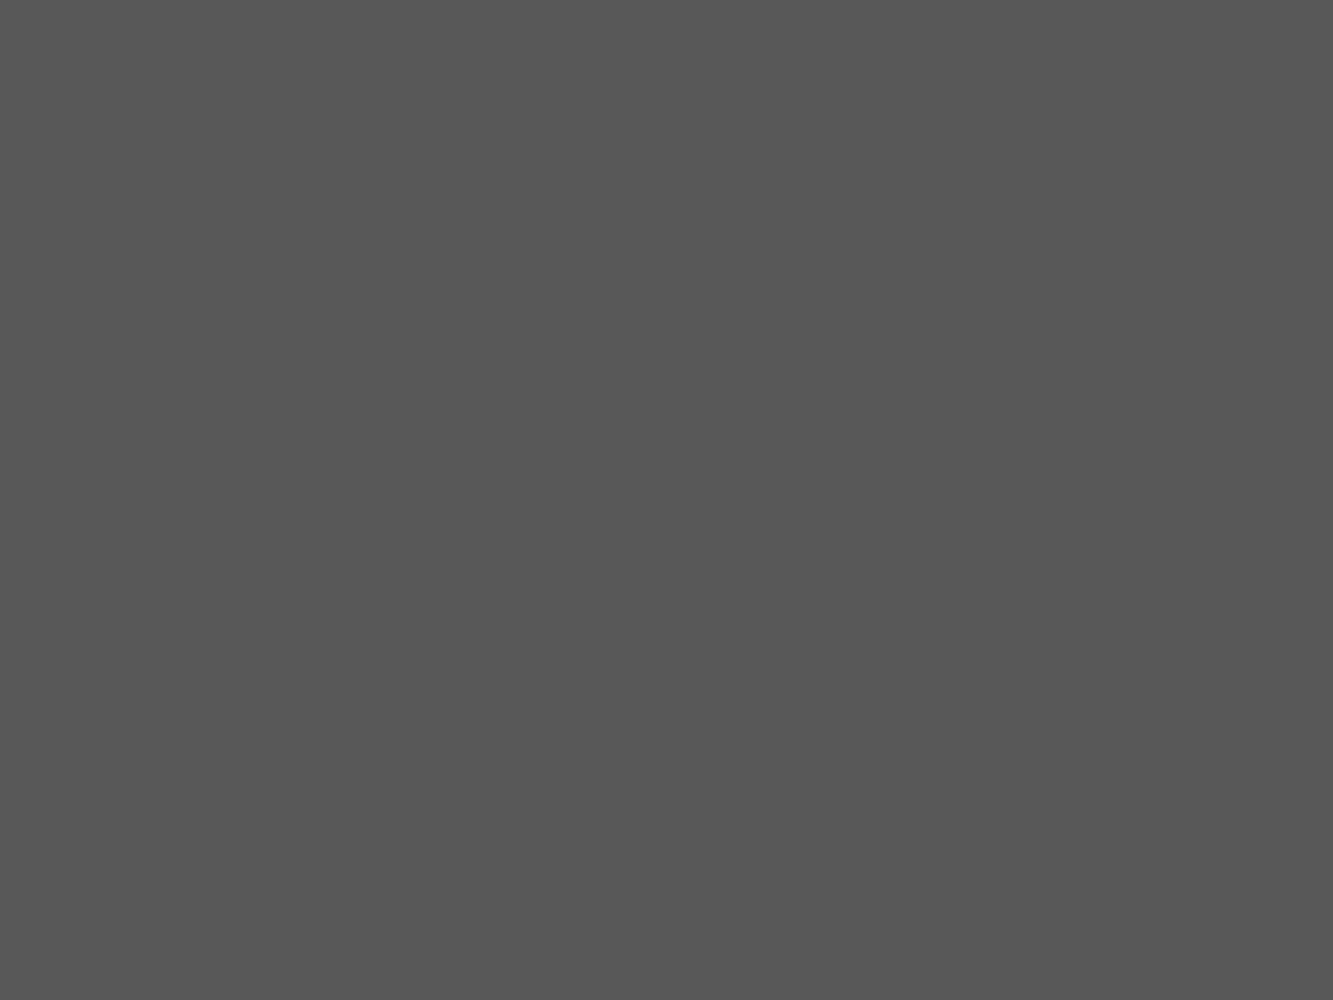 Владимир Кузьмин и Алла Пугачева в спорткомплексе «Олимпийский» во время концерта. Москва, 1986 год. Фотография: Николай Малышев / ТАСС